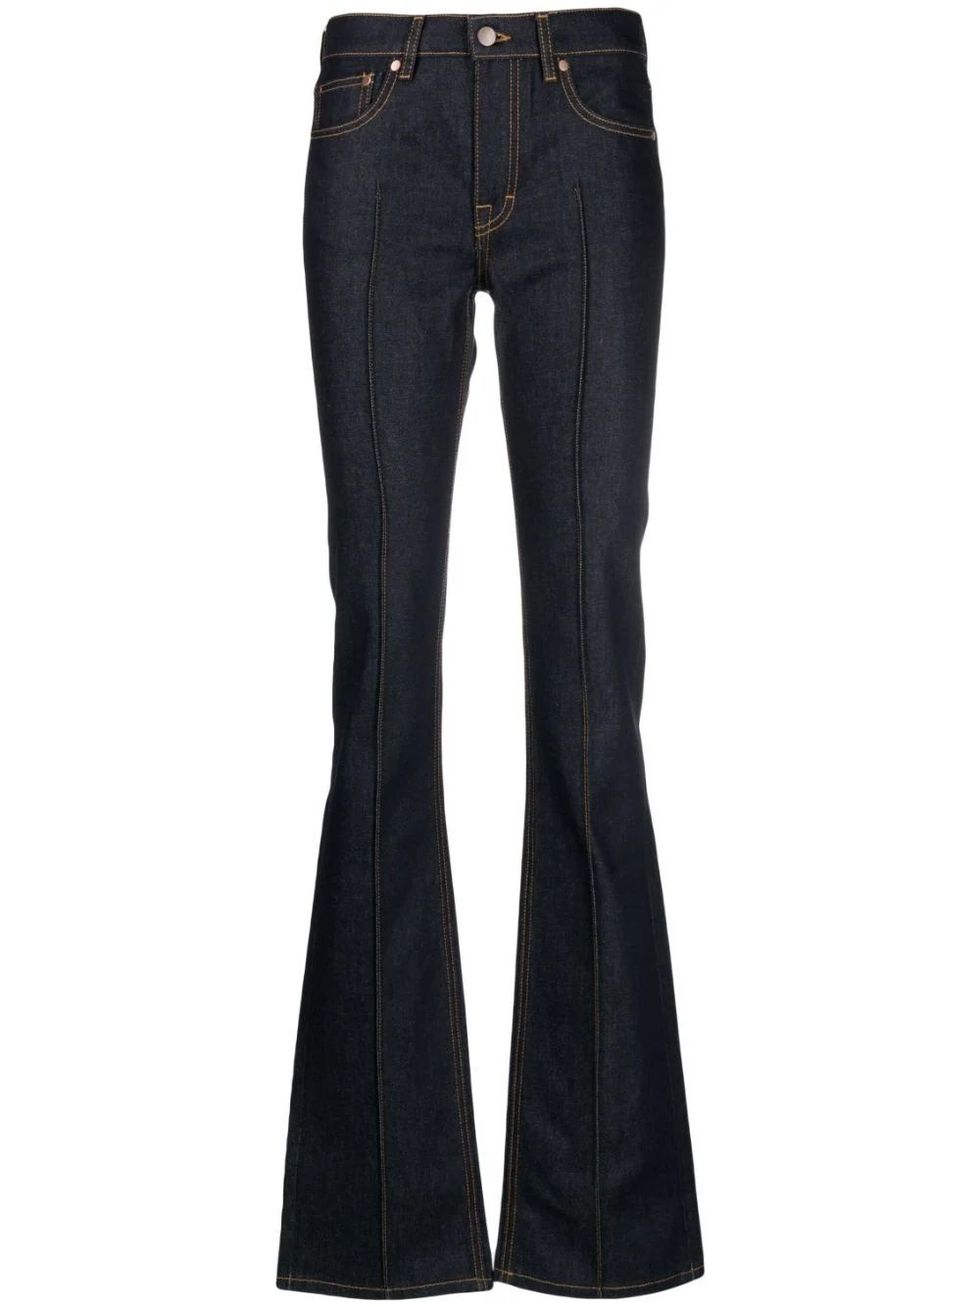 Pantalones vaqueros de cintura alta Invierno Fleece, Invierno Diseño Jeans  Mujer